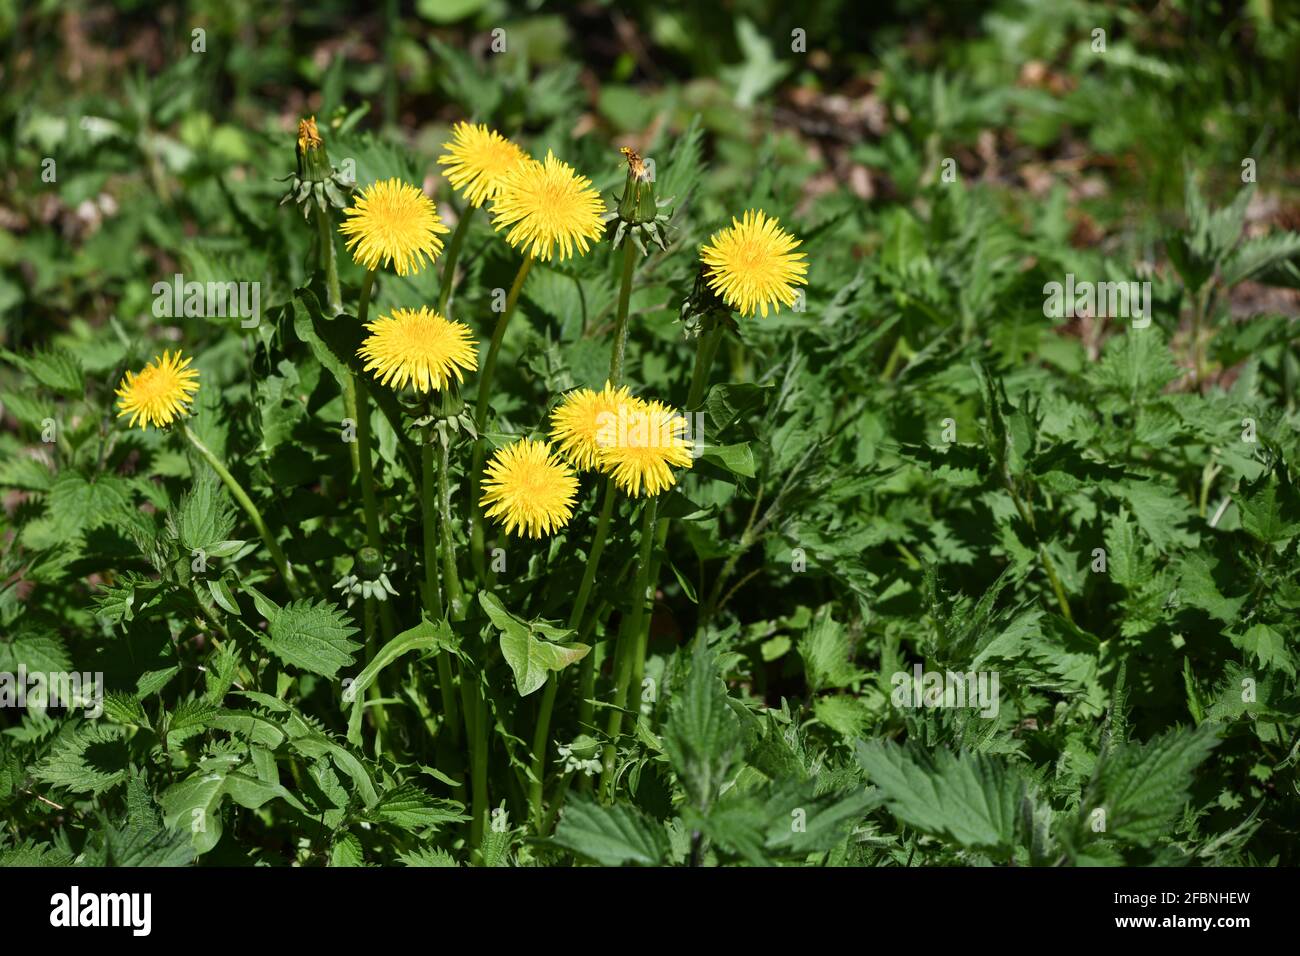 Löwenzahnpflanze - taraxacum - auf einer Frühlingswiese Stock Photo